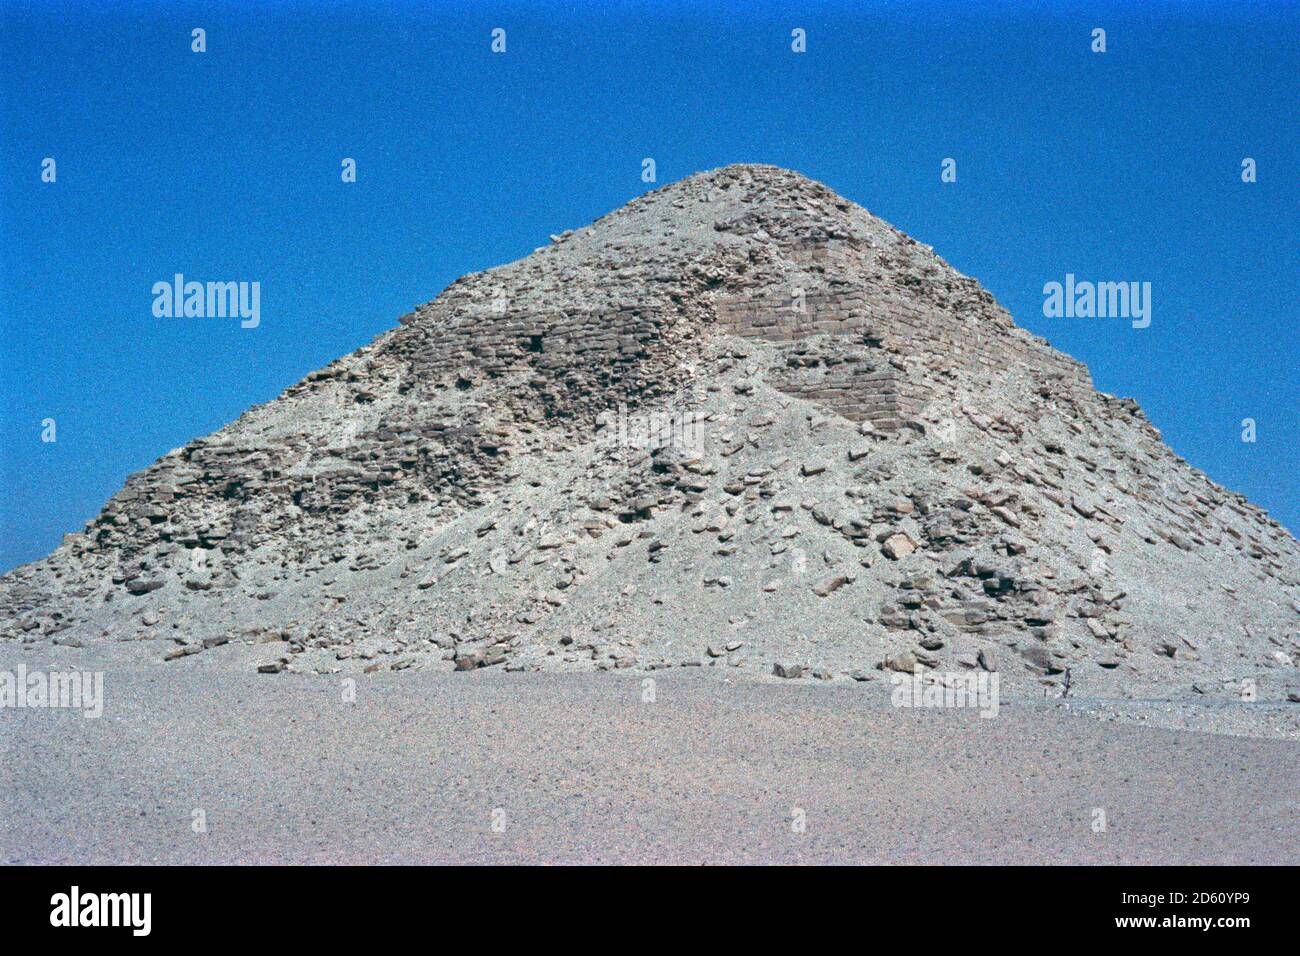 a Pyramid of Queens, Giza, Cairo, September 1984, Egypt Stock Photo